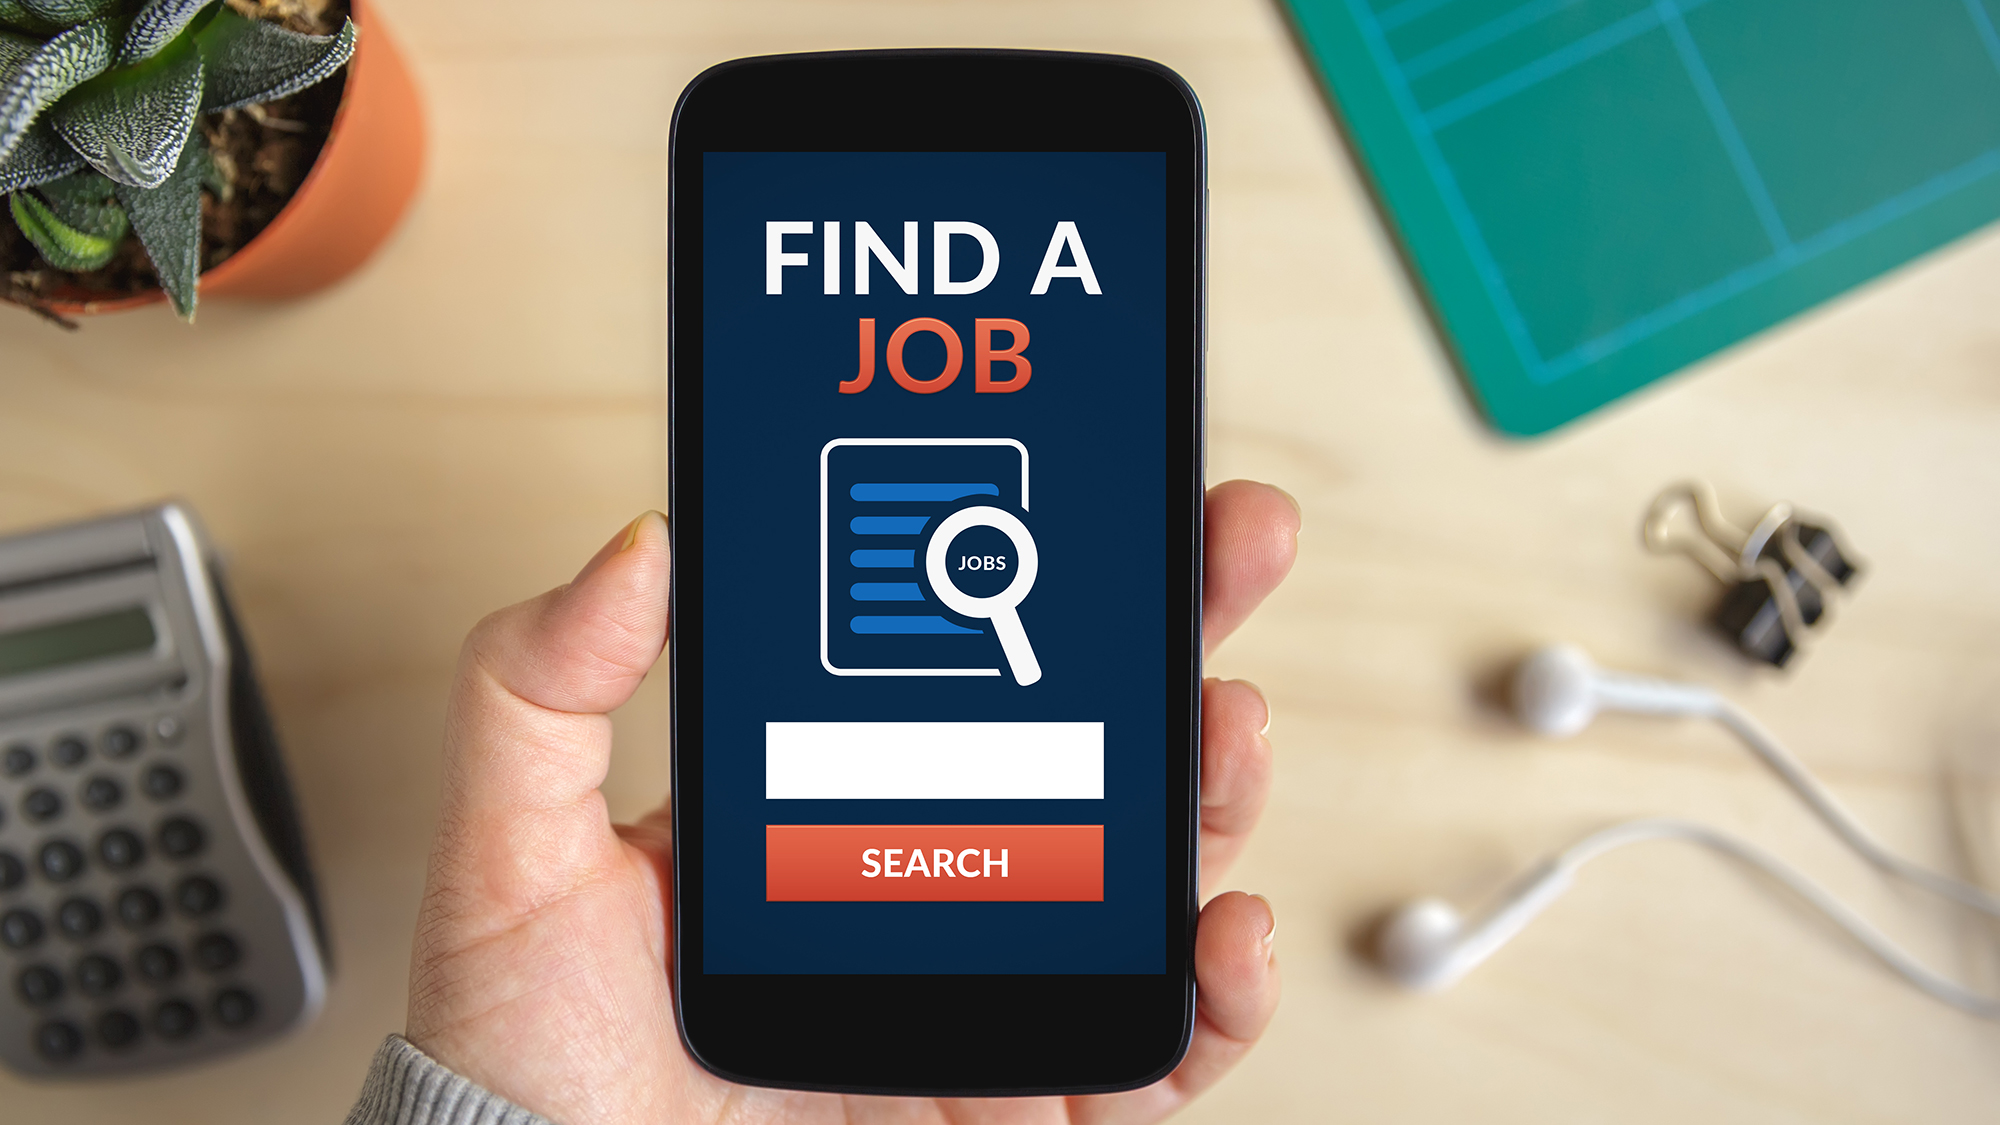 Handy mit App "Find a job" geöffnet